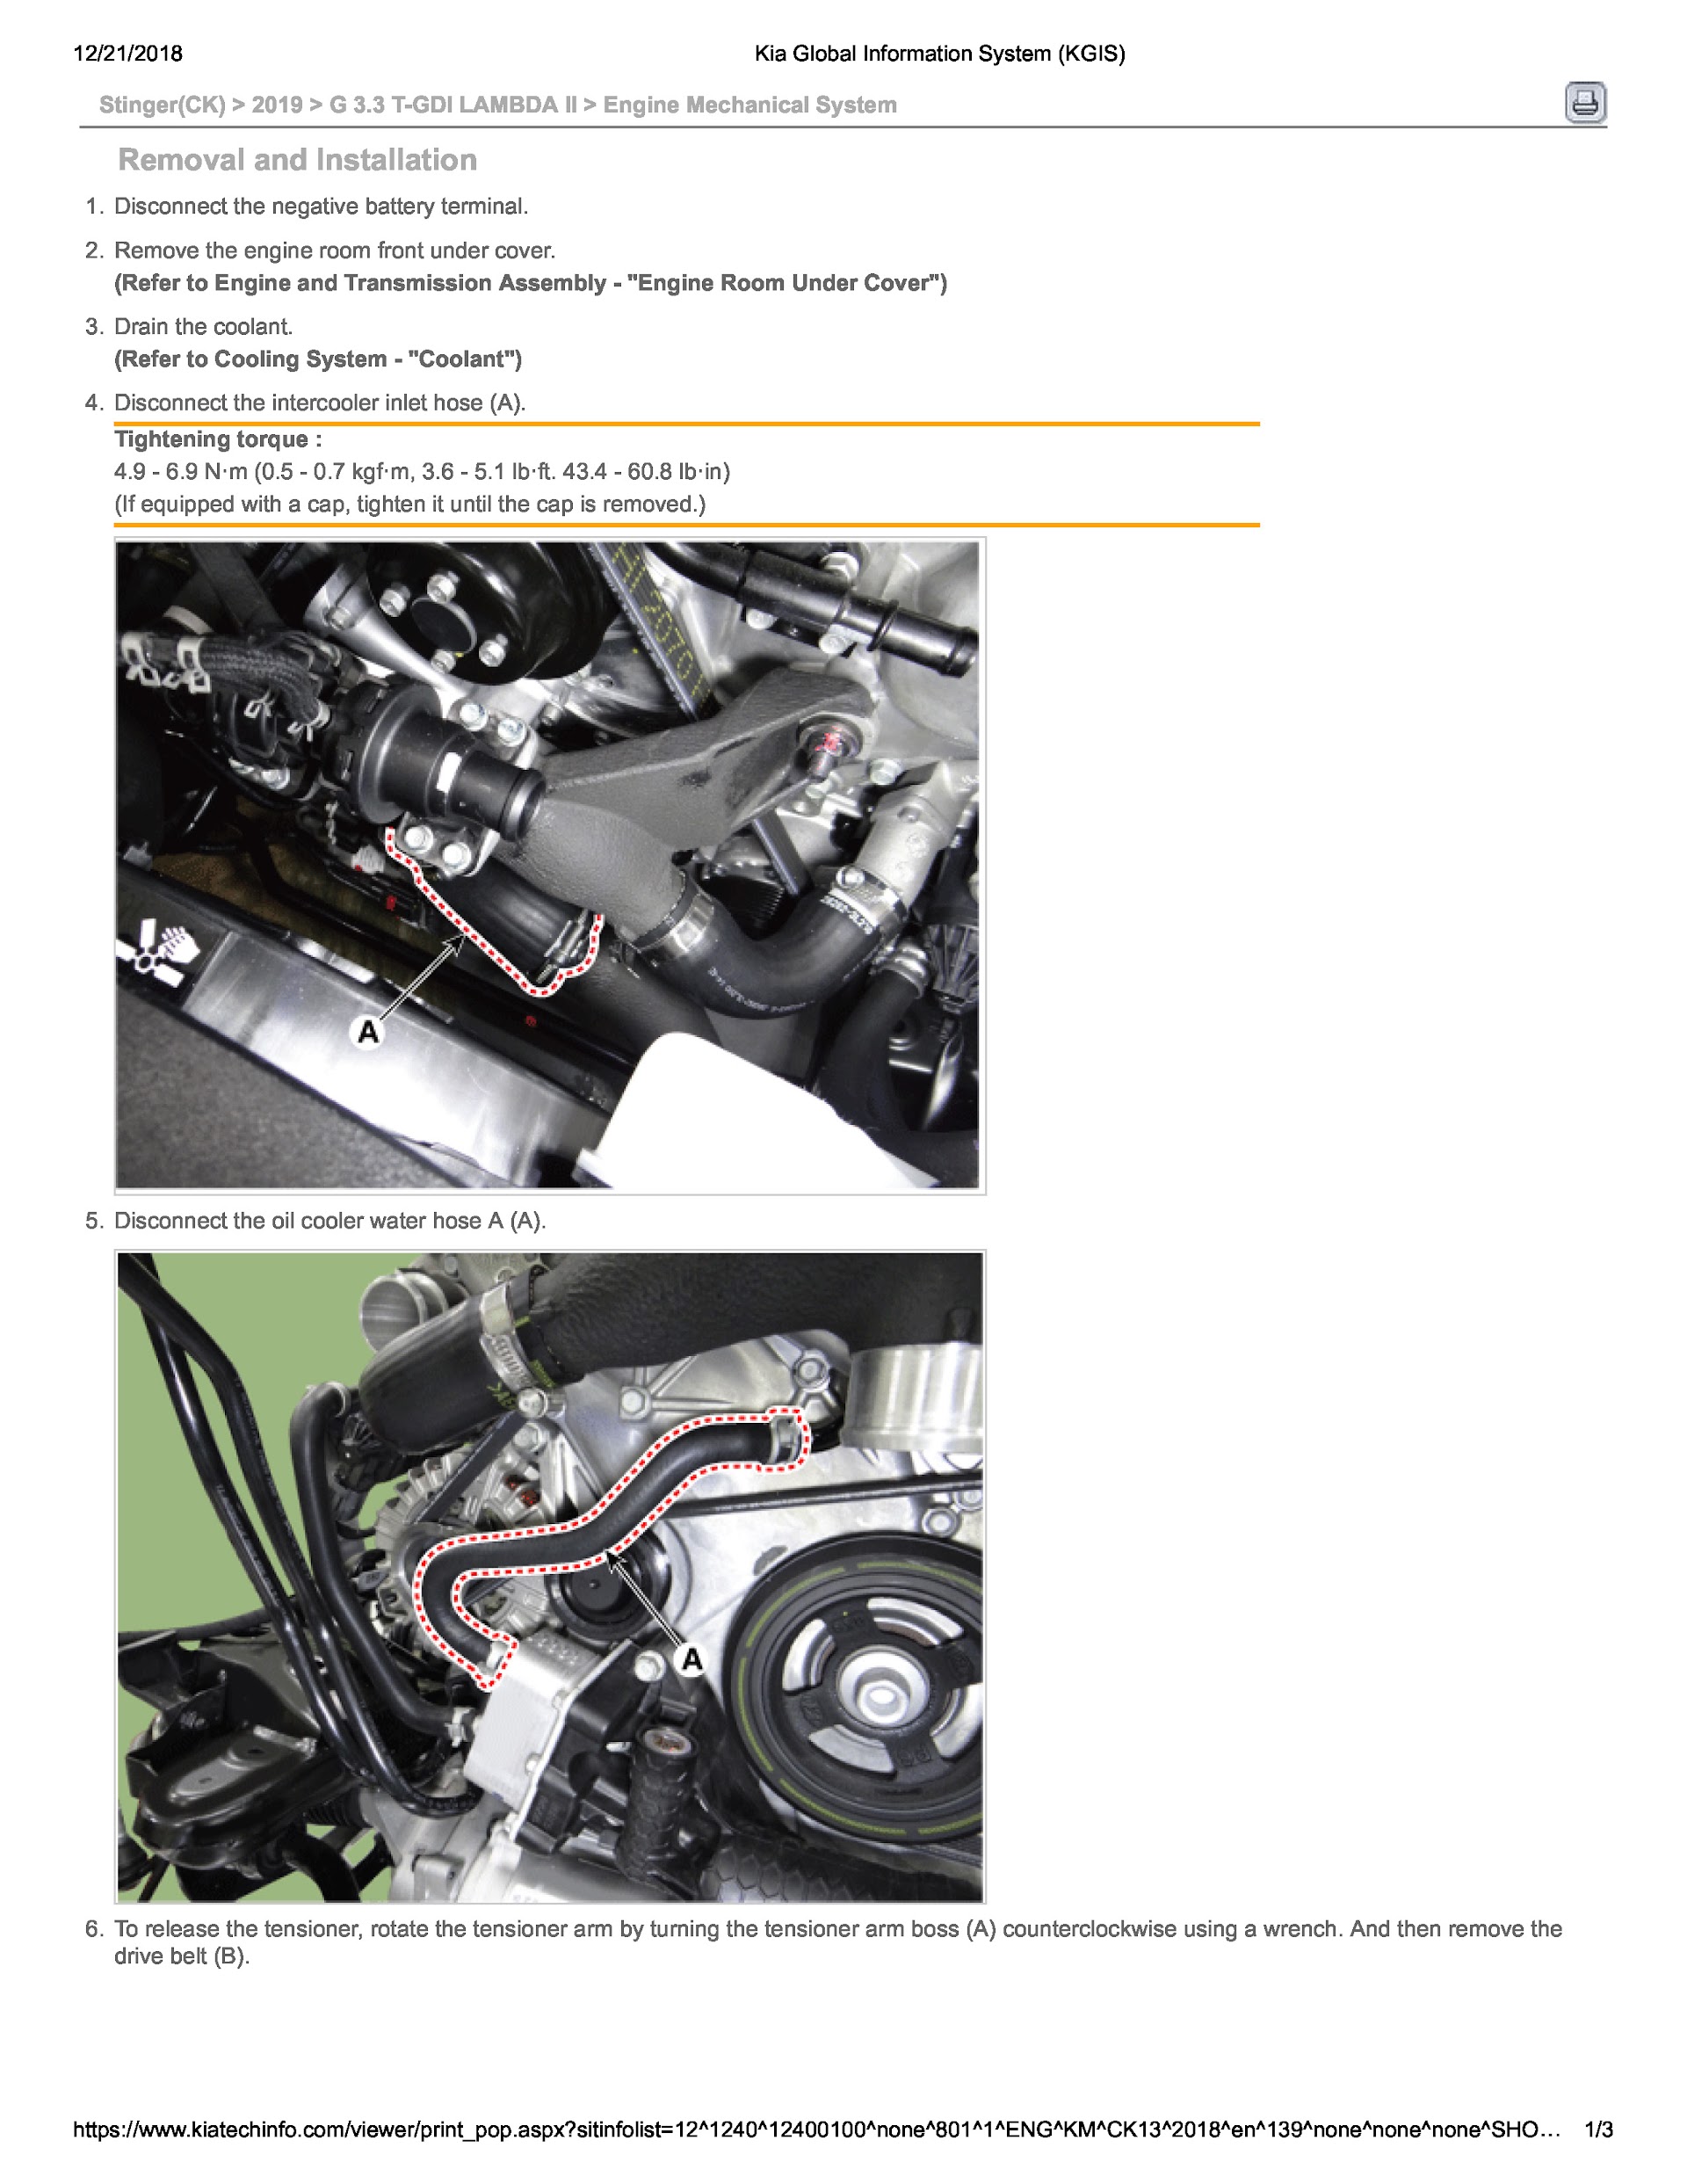 2019 Kia Stinger Repair Manual, Engine Mechanical System